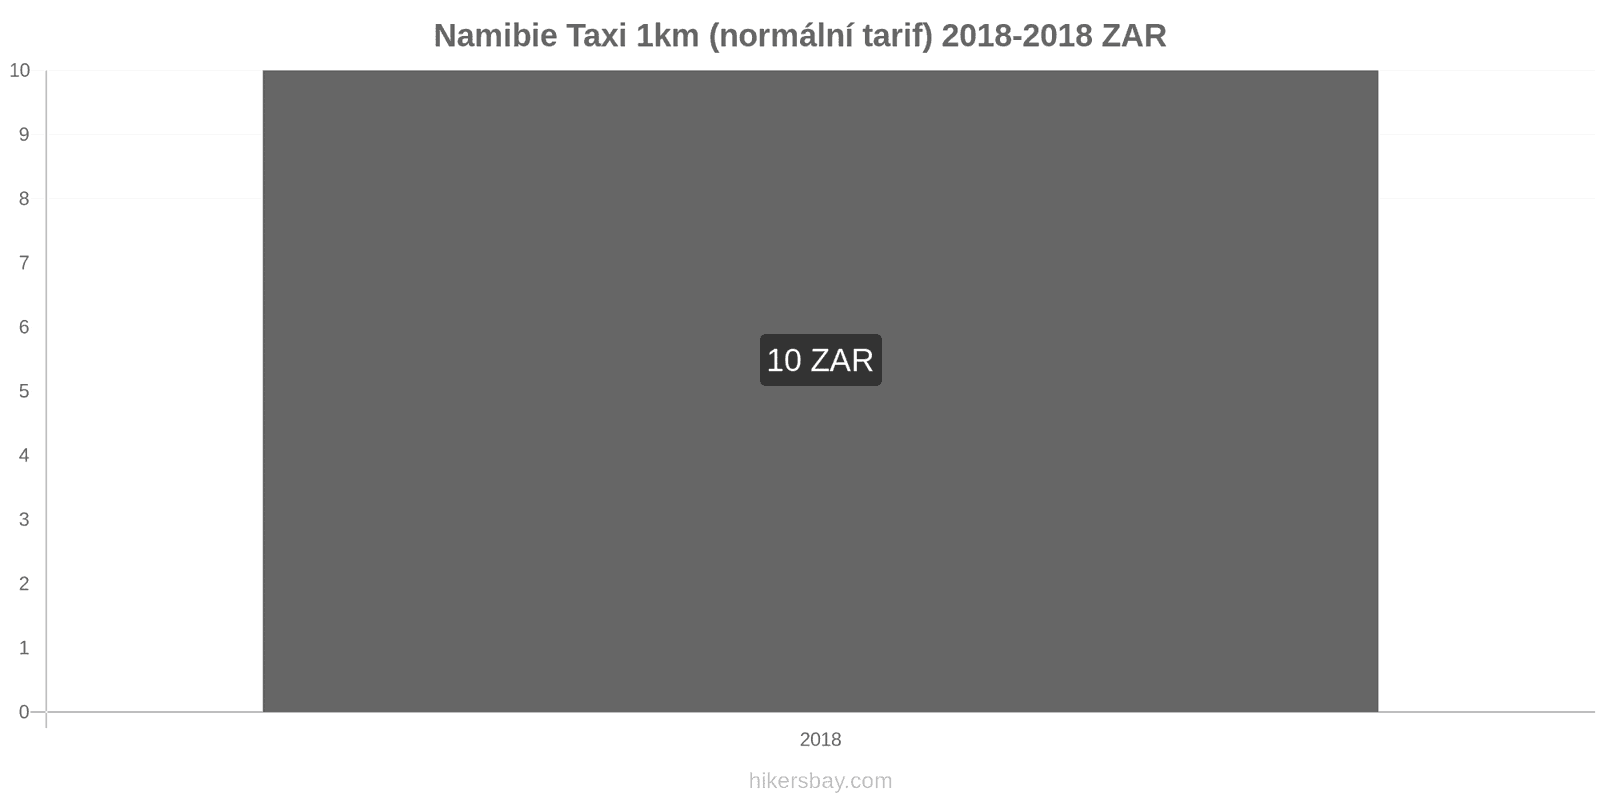 Namibie změny cen Taxi 1km (normální tarif) hikersbay.com